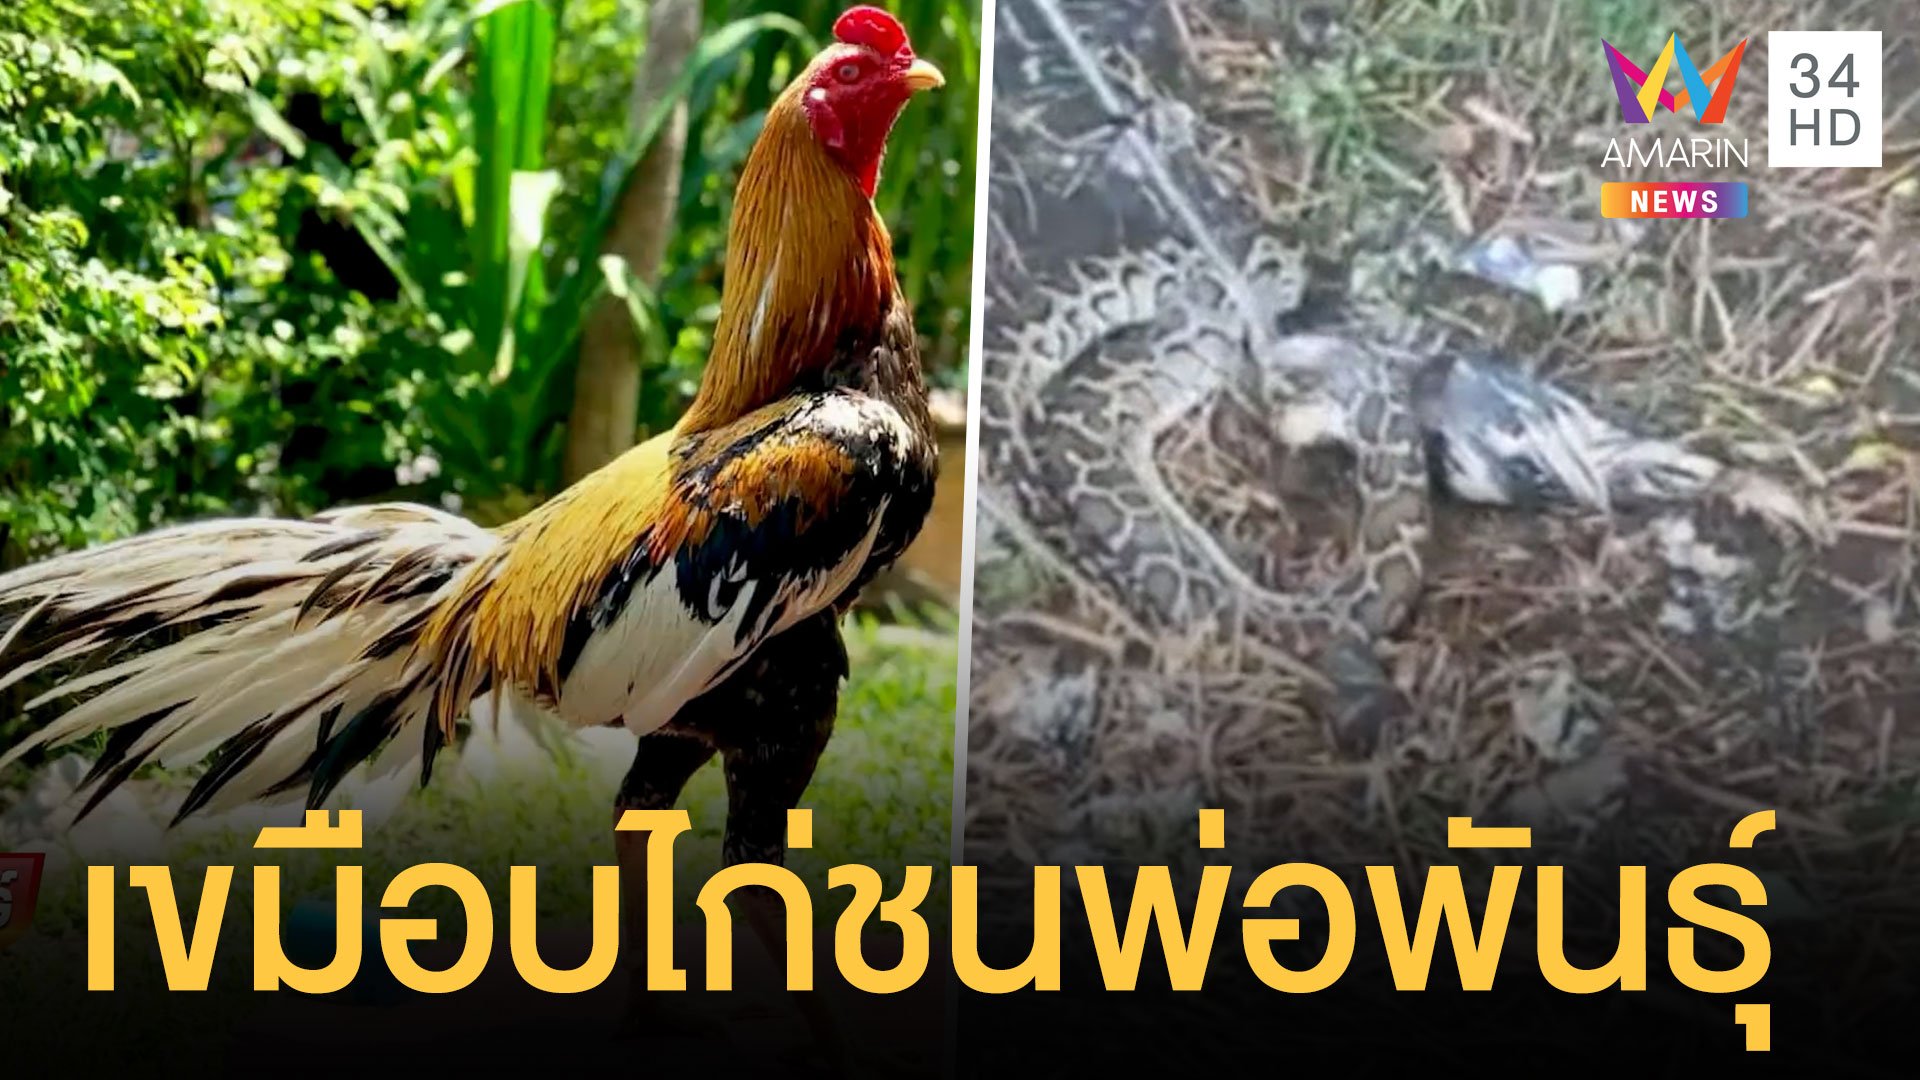 งูหลามกินไก่ชนเหลืองหางขาว ระดับพ่อพันธุ์ | ข่าวอรุณอมรินทร์ | 12 ต.ค. 64 | AMARIN TVHD34